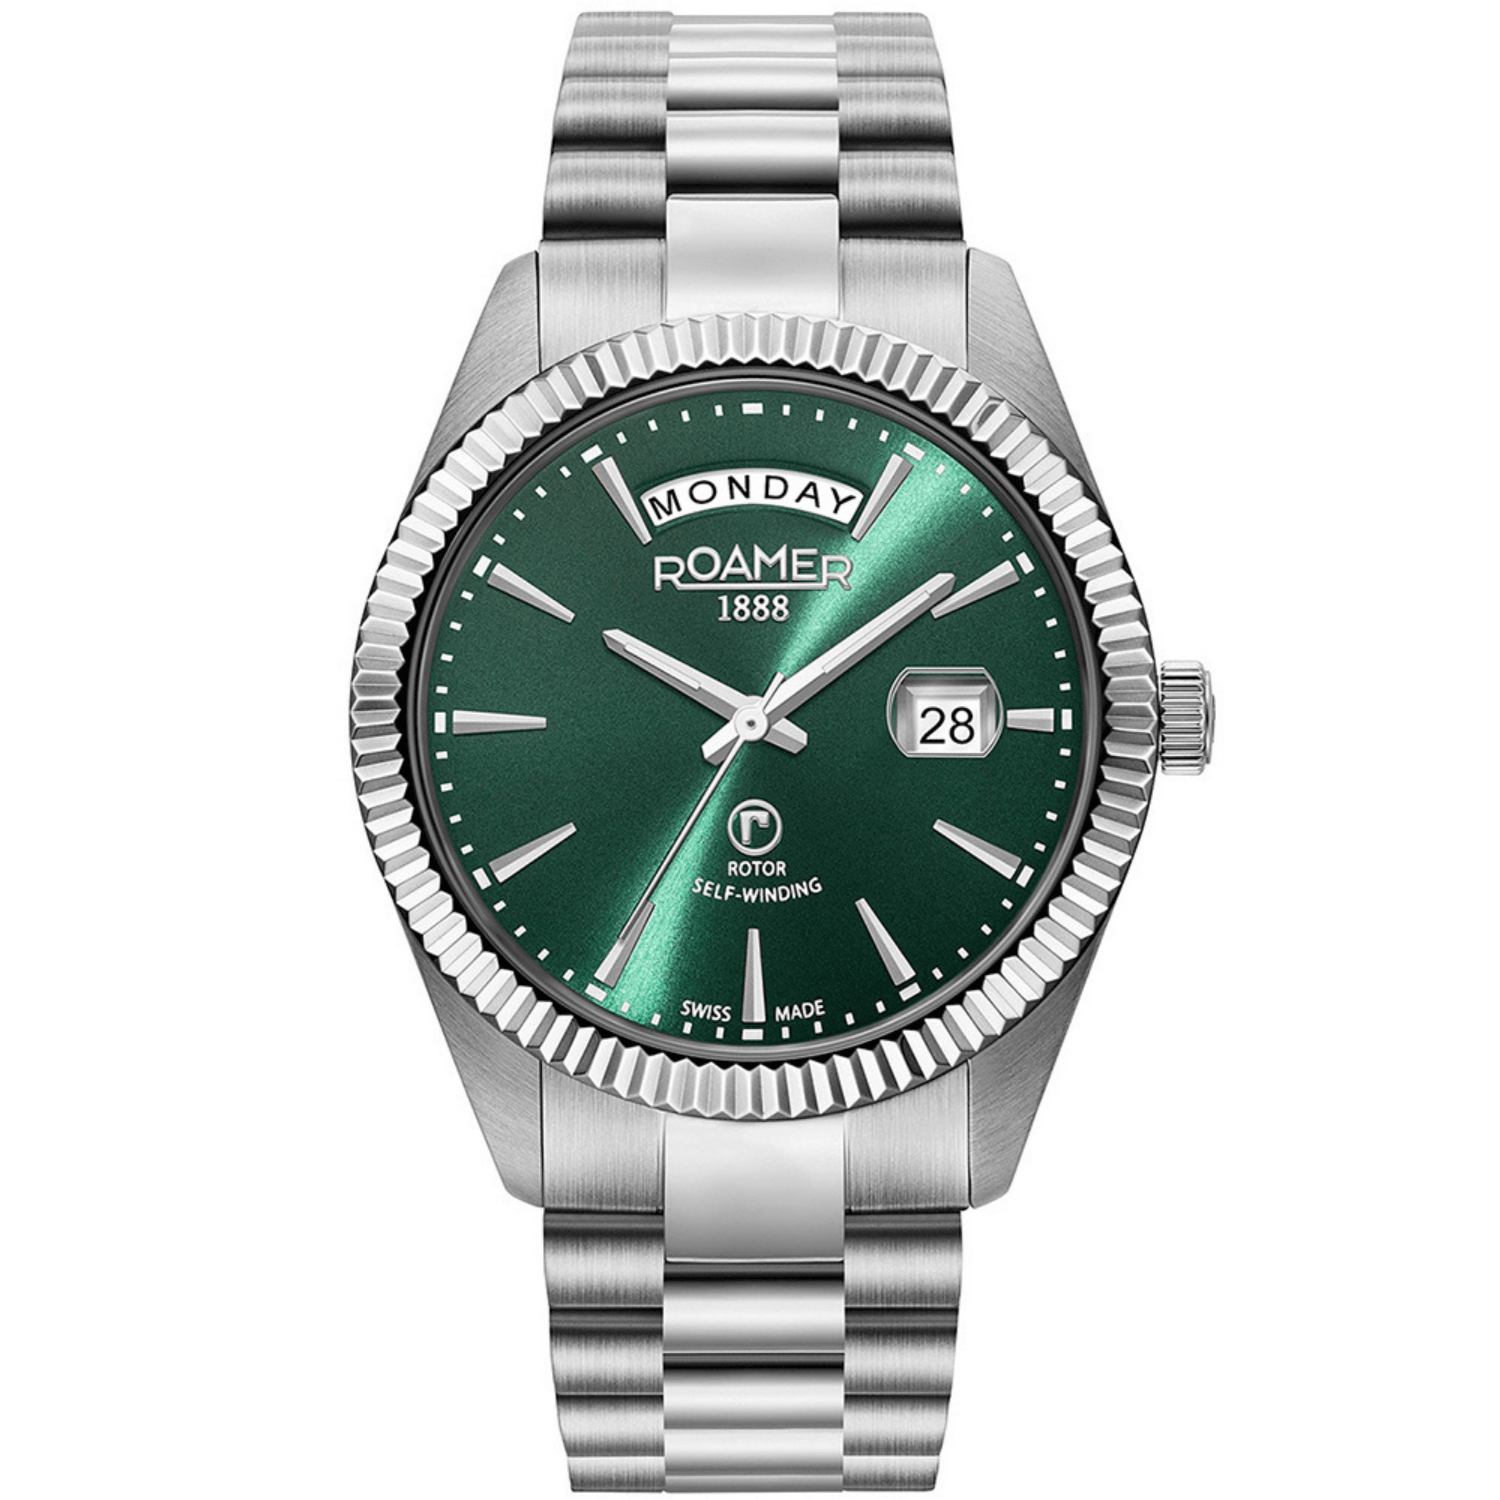 Ανδρικό ρολόι roamer primeline 981662-41-75-90 με ασημένιο μπρασελέ και πράσινο καντράν με ένδειξη ημερομηνίας και ώρας.